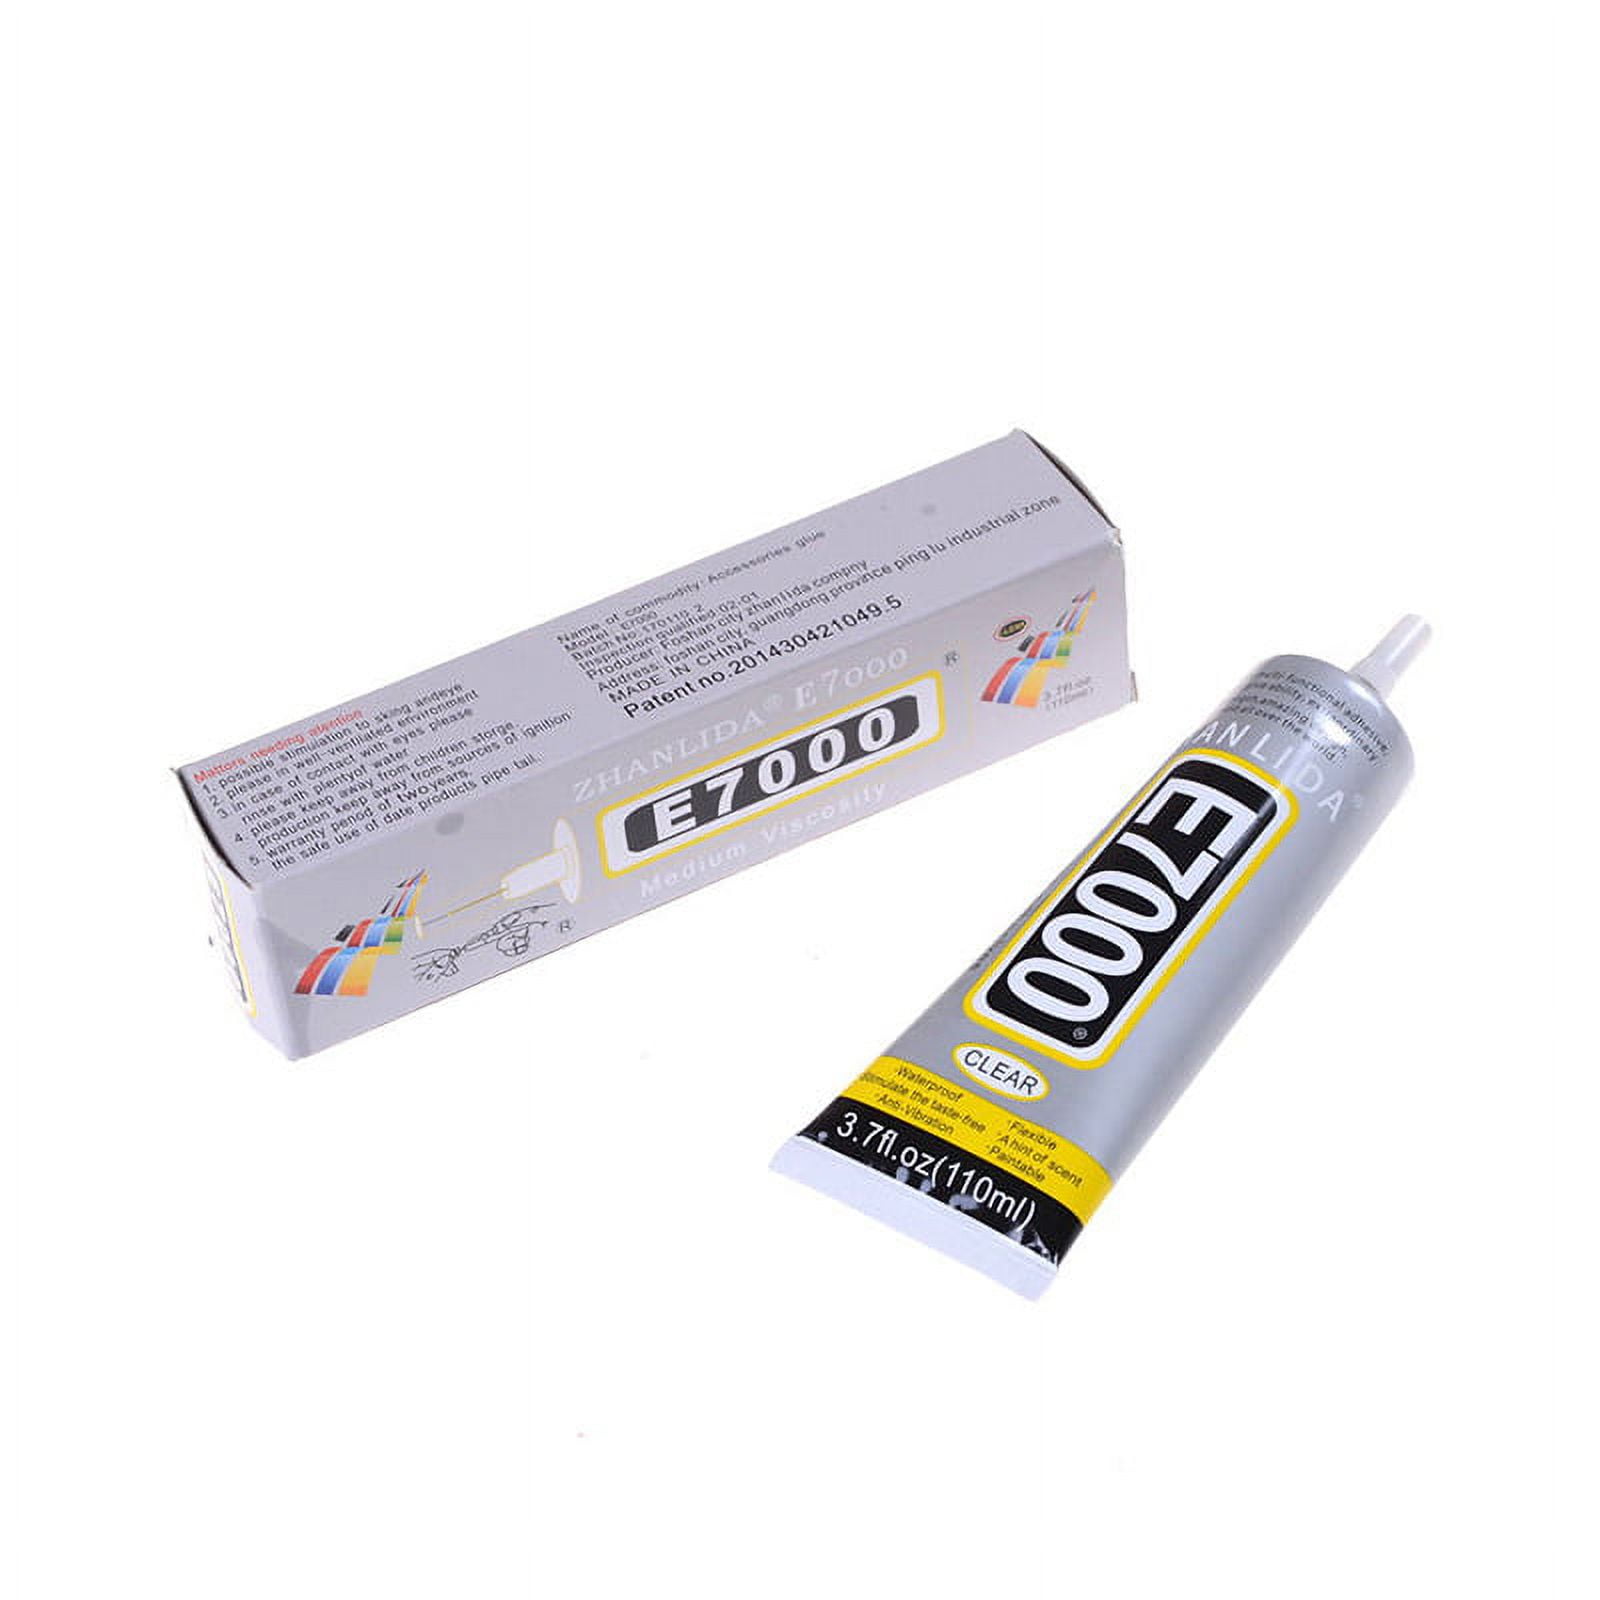 Wholesale E7000 Adhesive Glue 